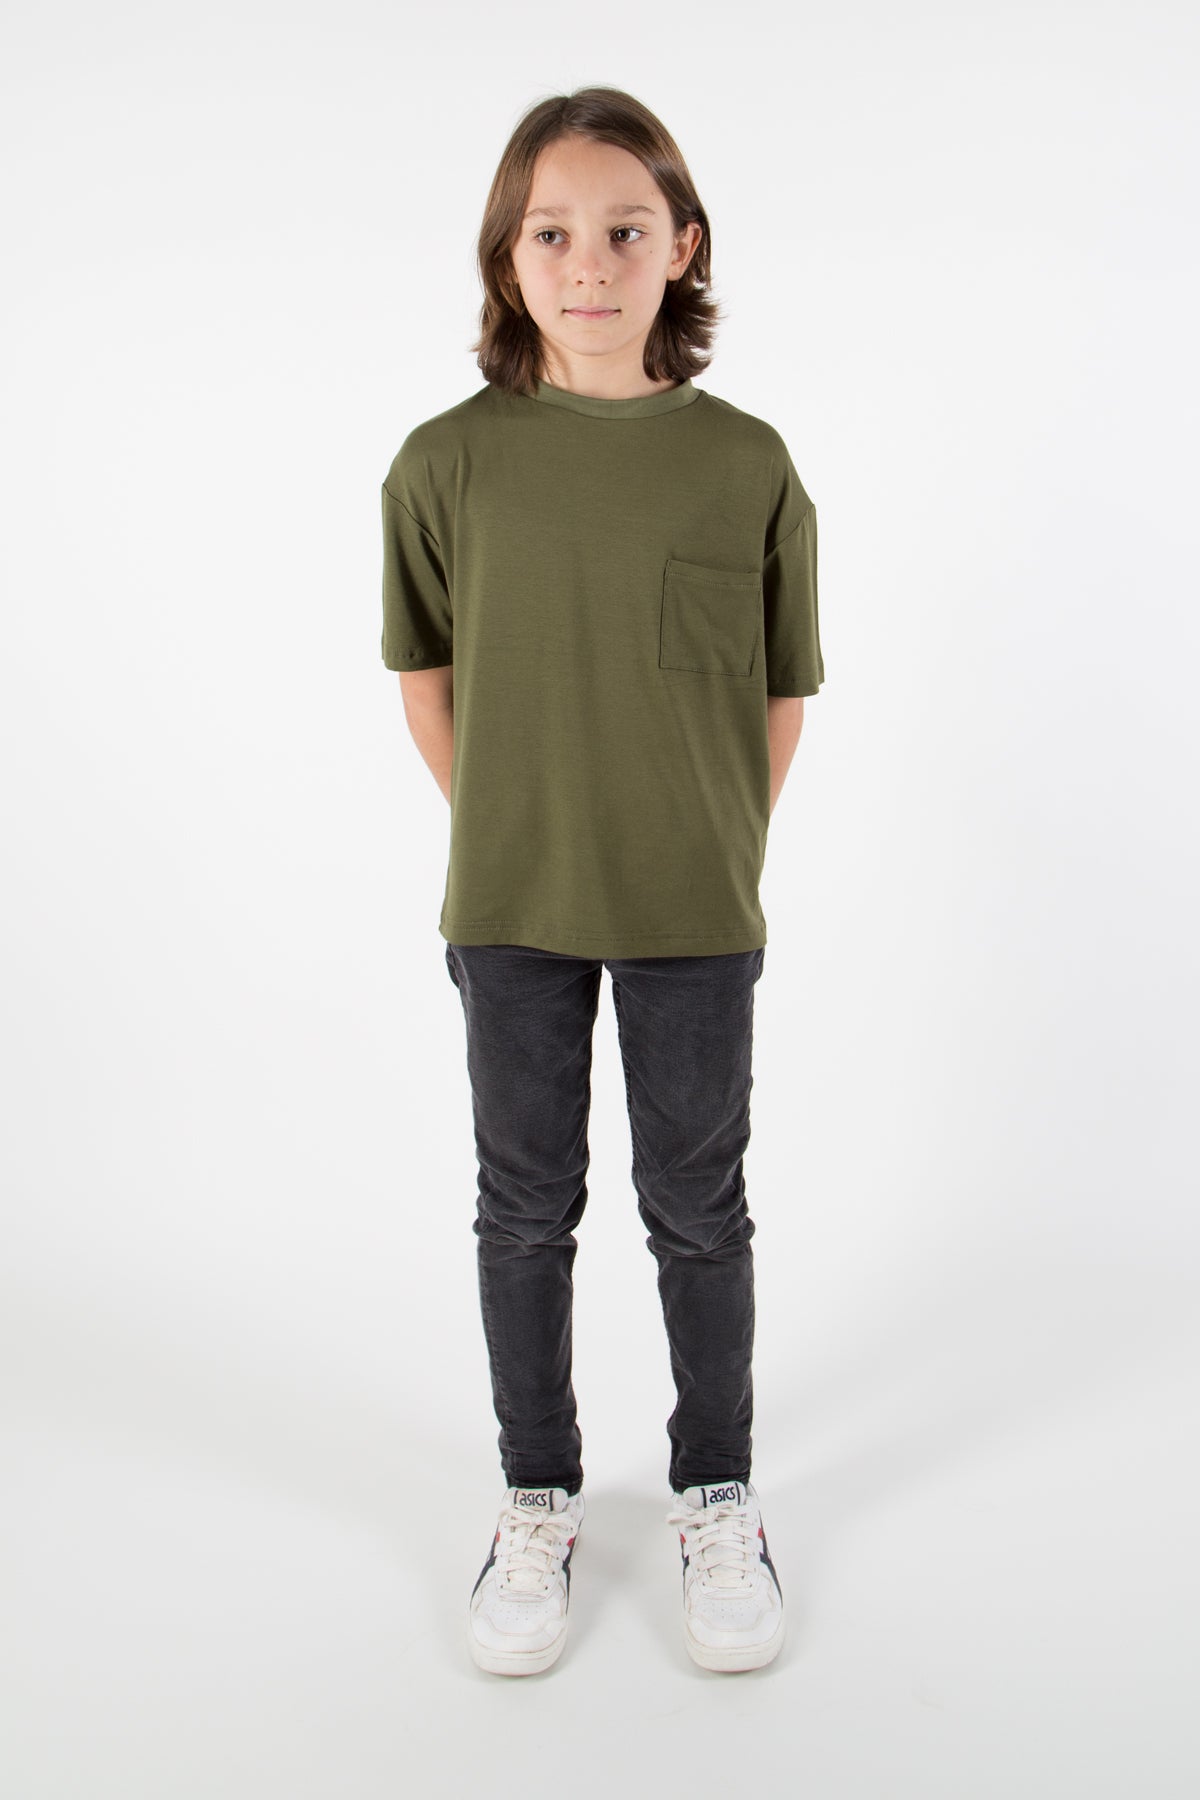 Lian T-Shirt khaki